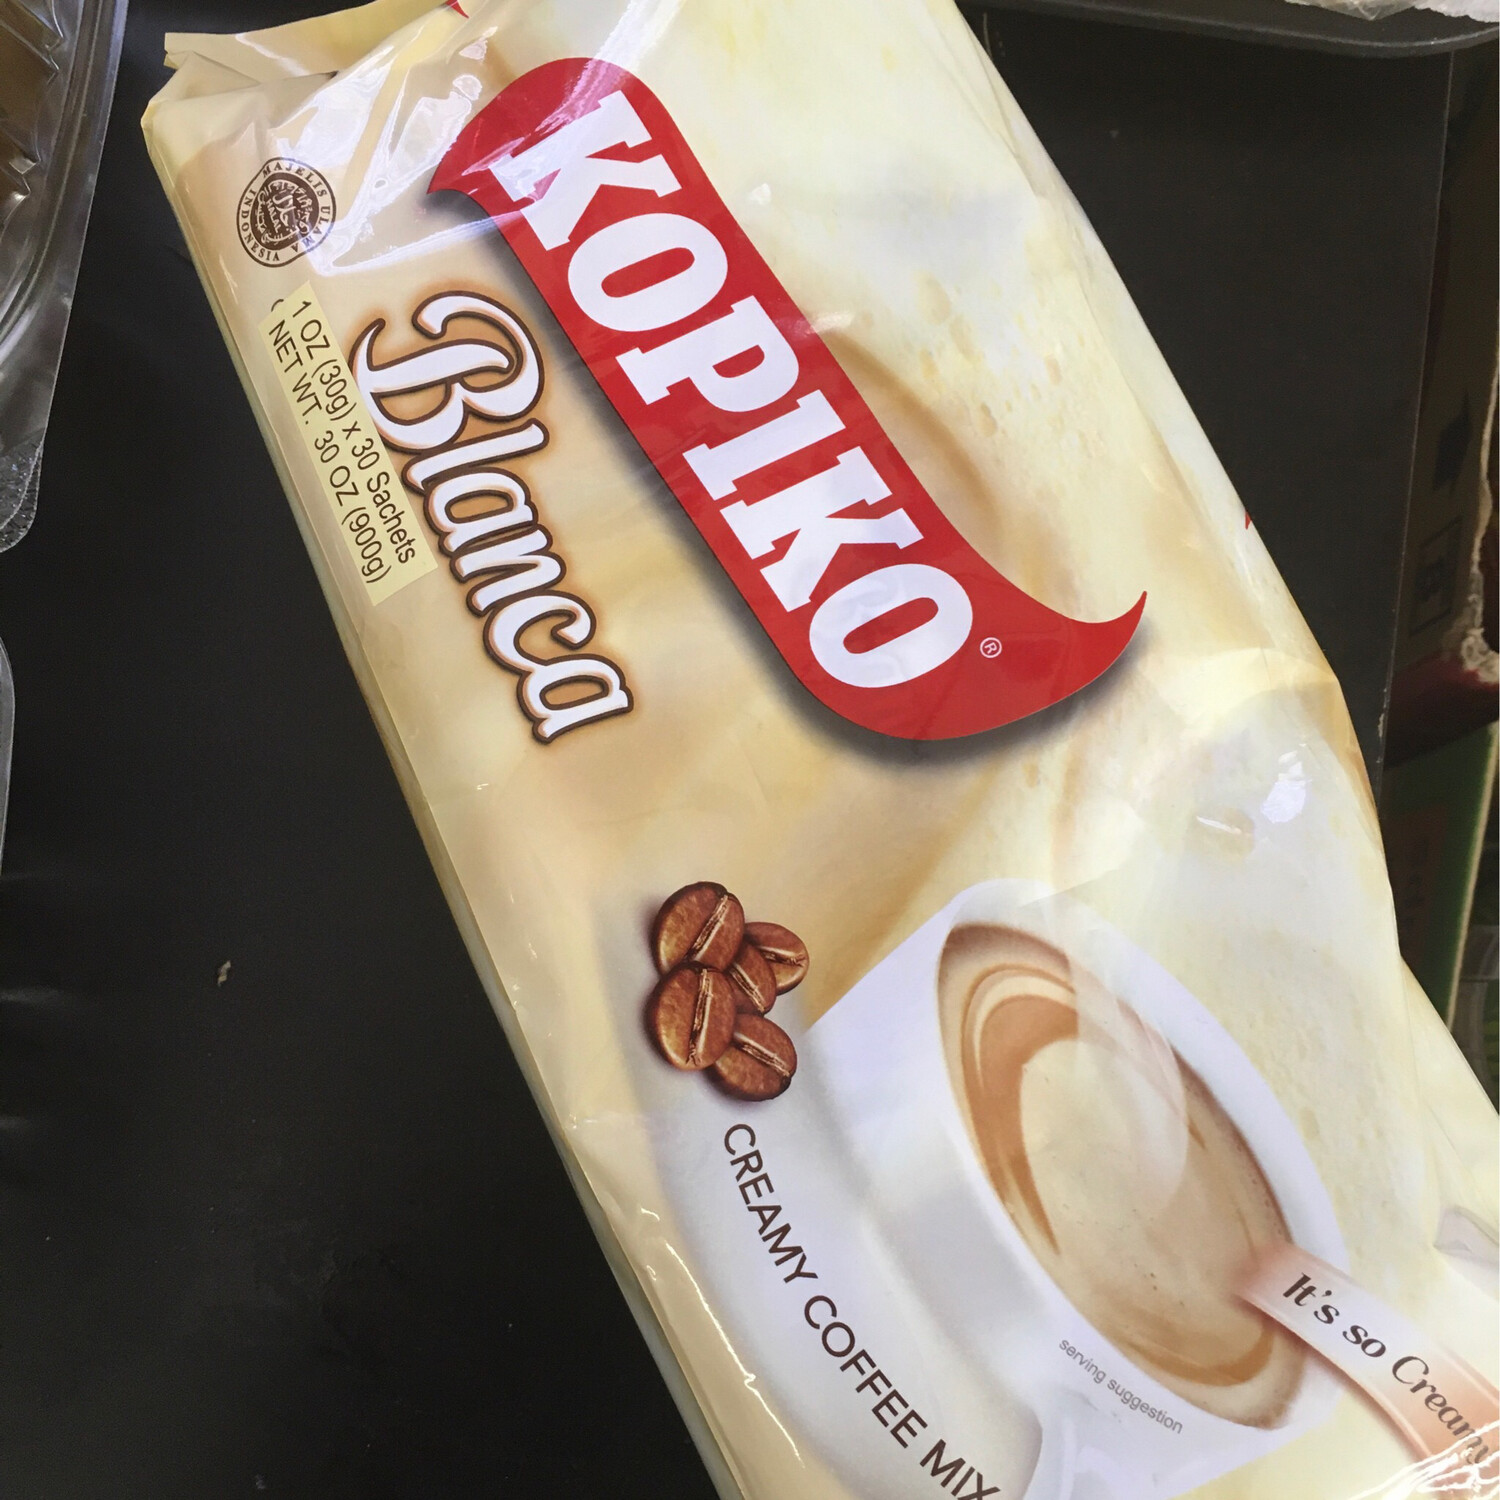 Kopiko Blanca / White Coffee 900 grams (30 Sachets)